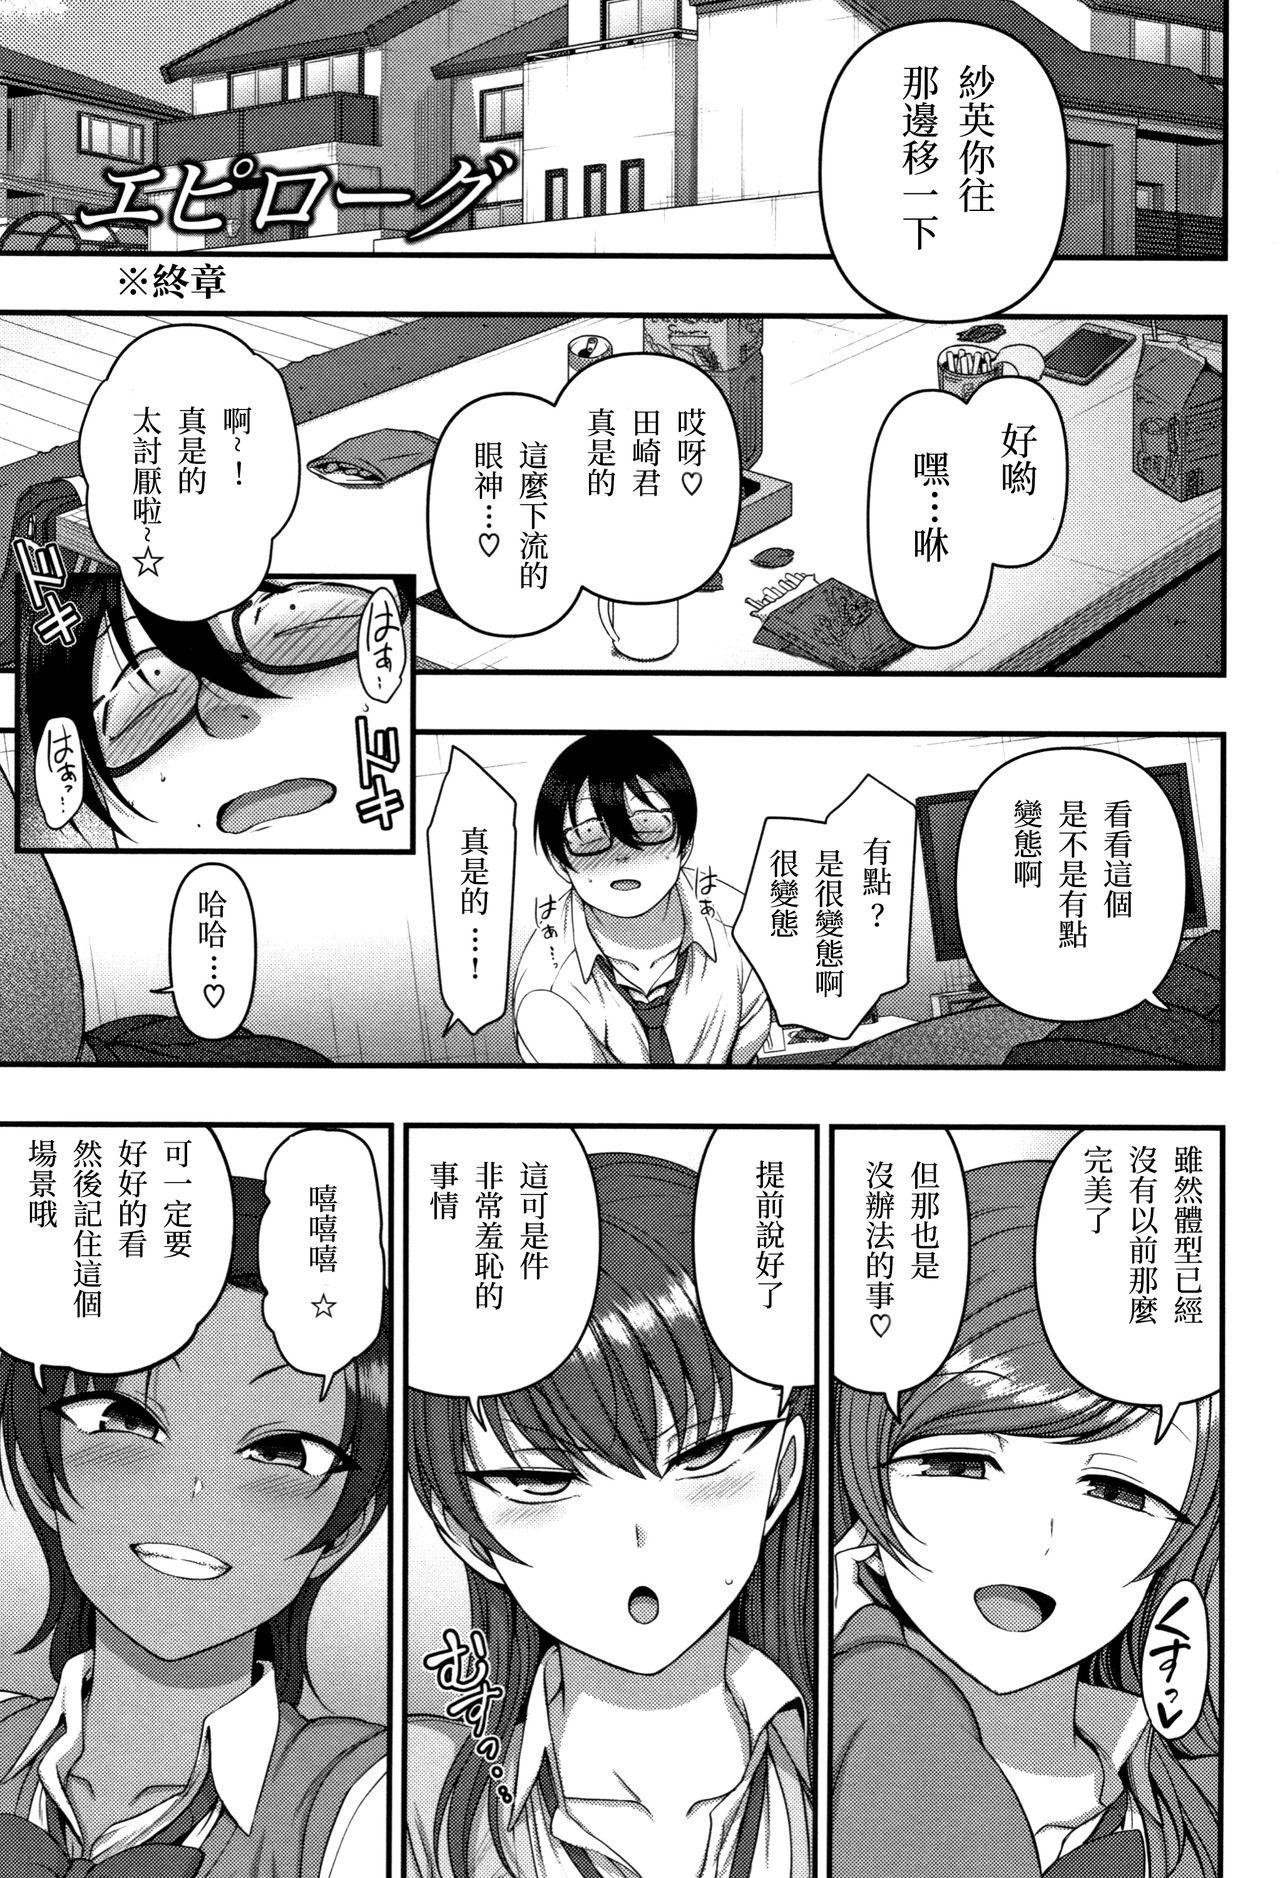 ...IzirareEpilogue Page 3 Of 26 hentai comic, IzirareEpilogue Page 3 Of 26 ...